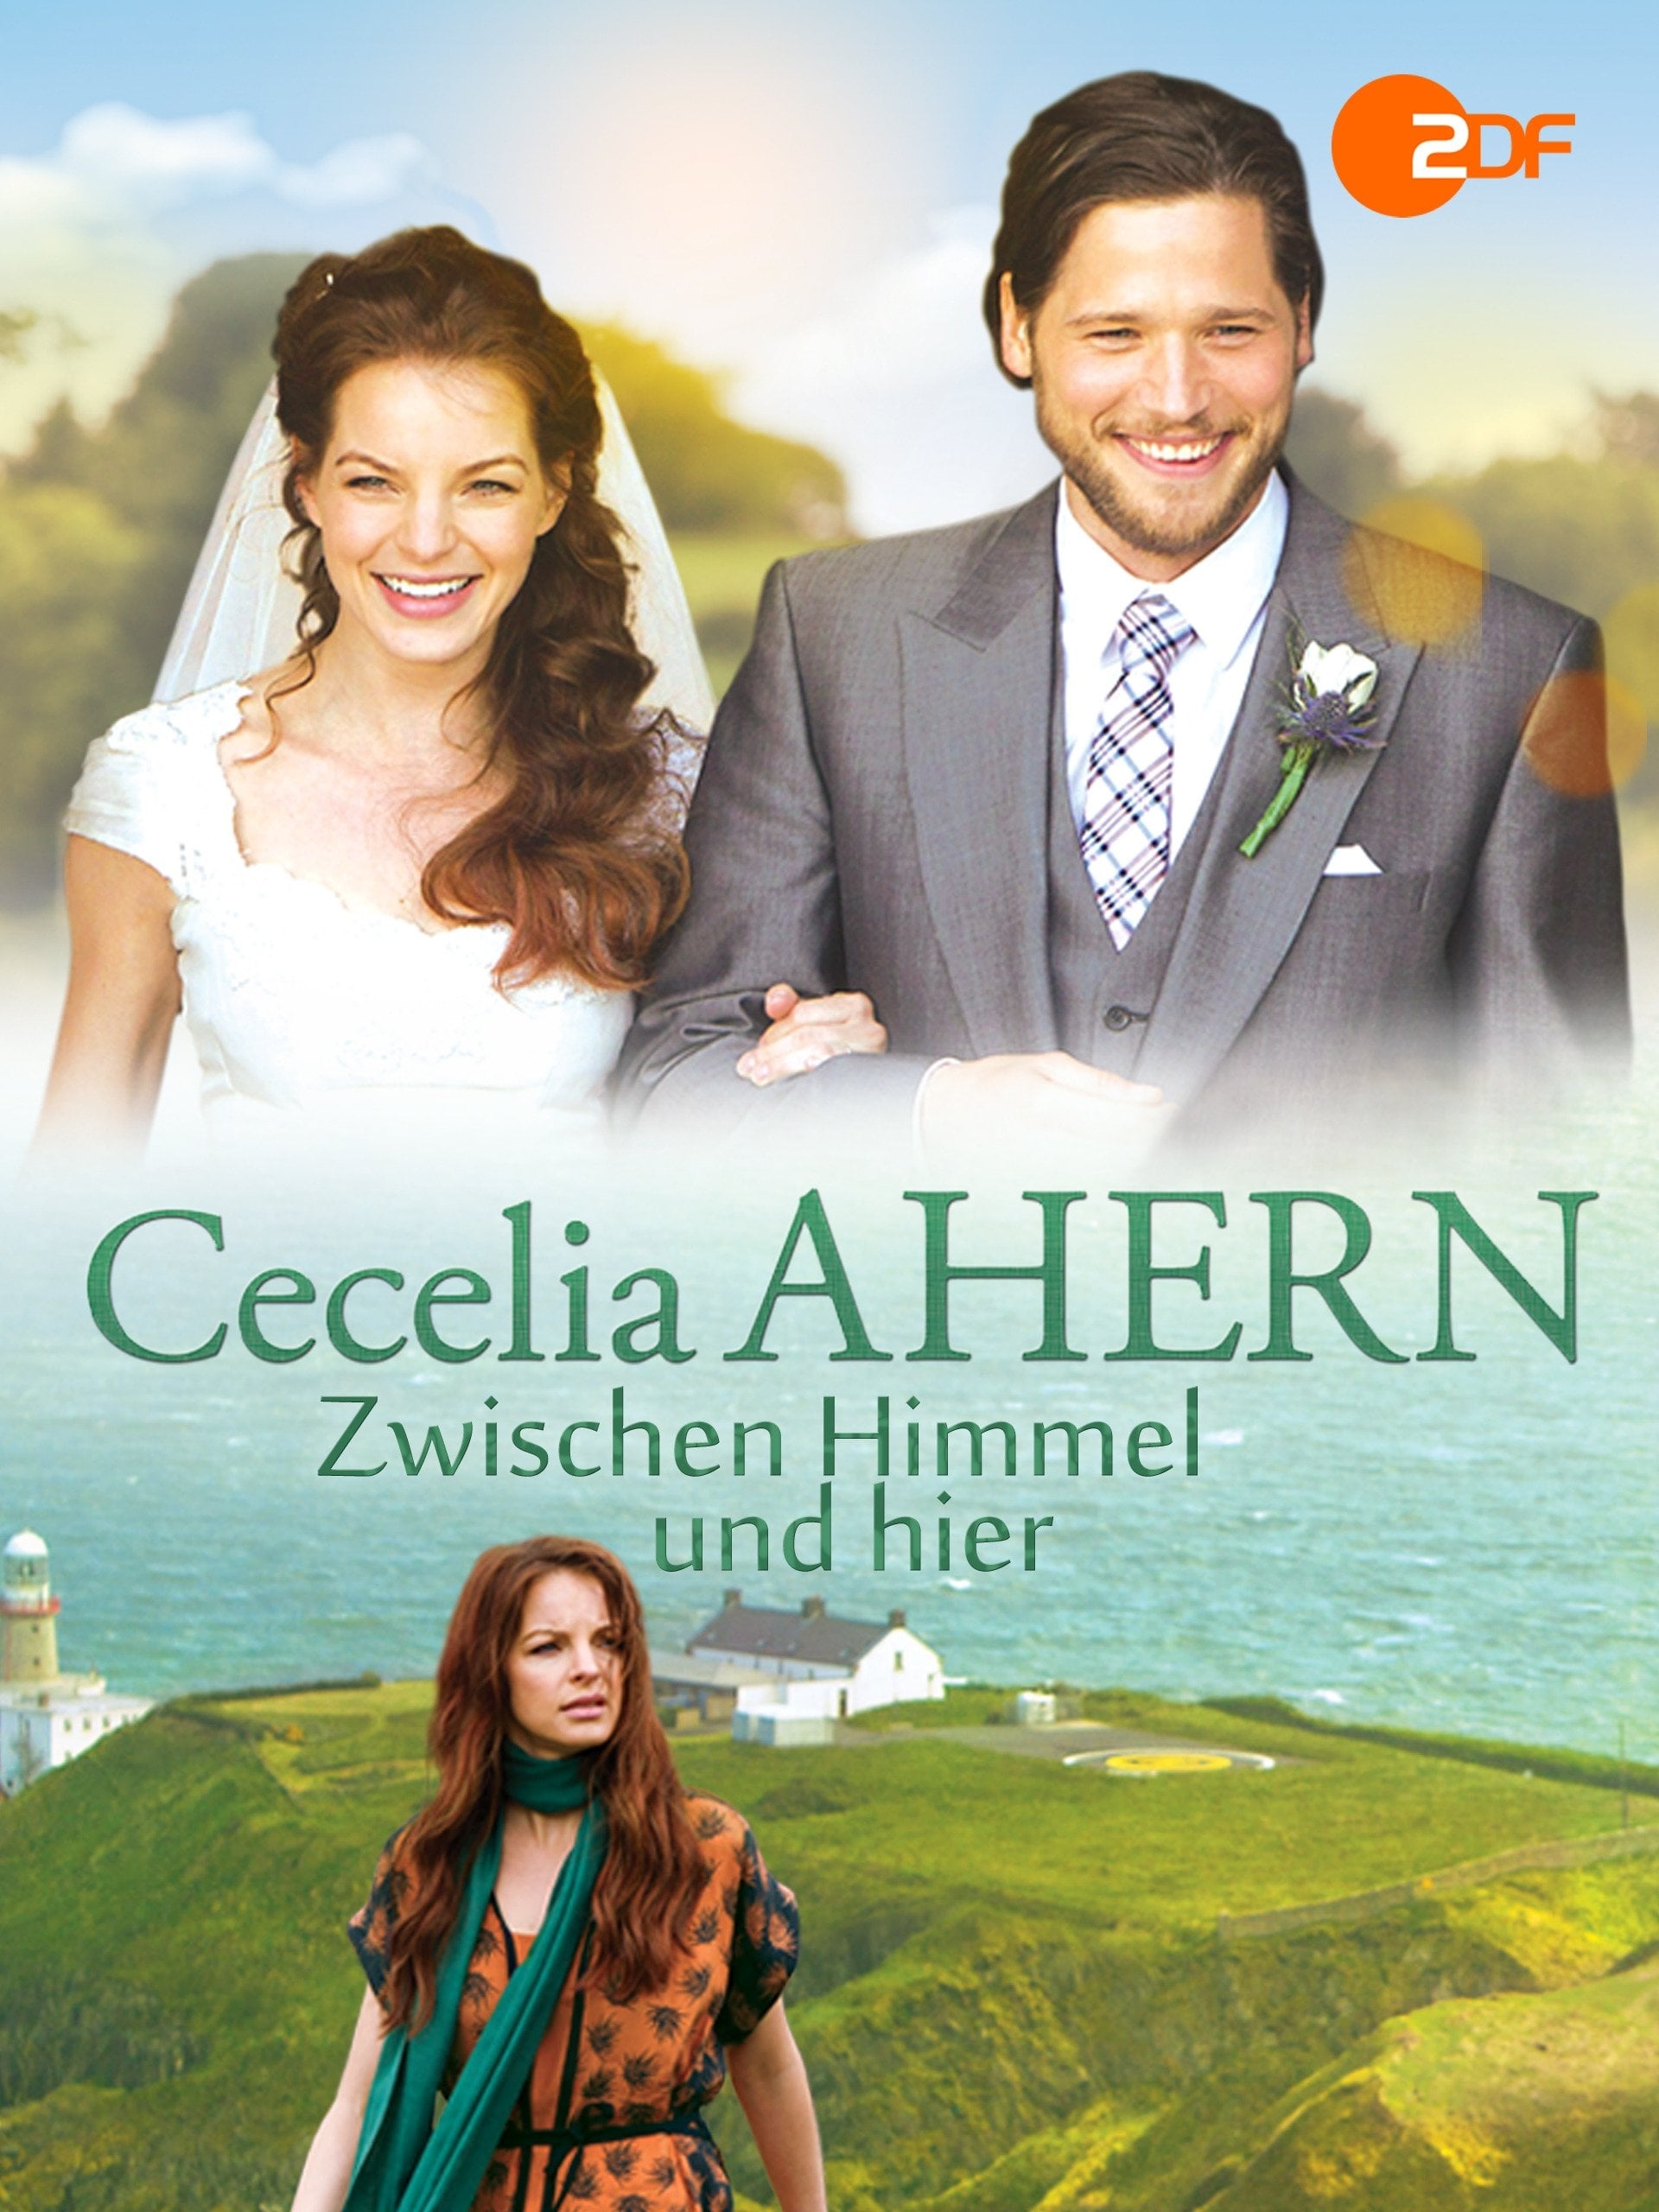 Cecelia Ahern: Zwischen Himmel und hier (2014)